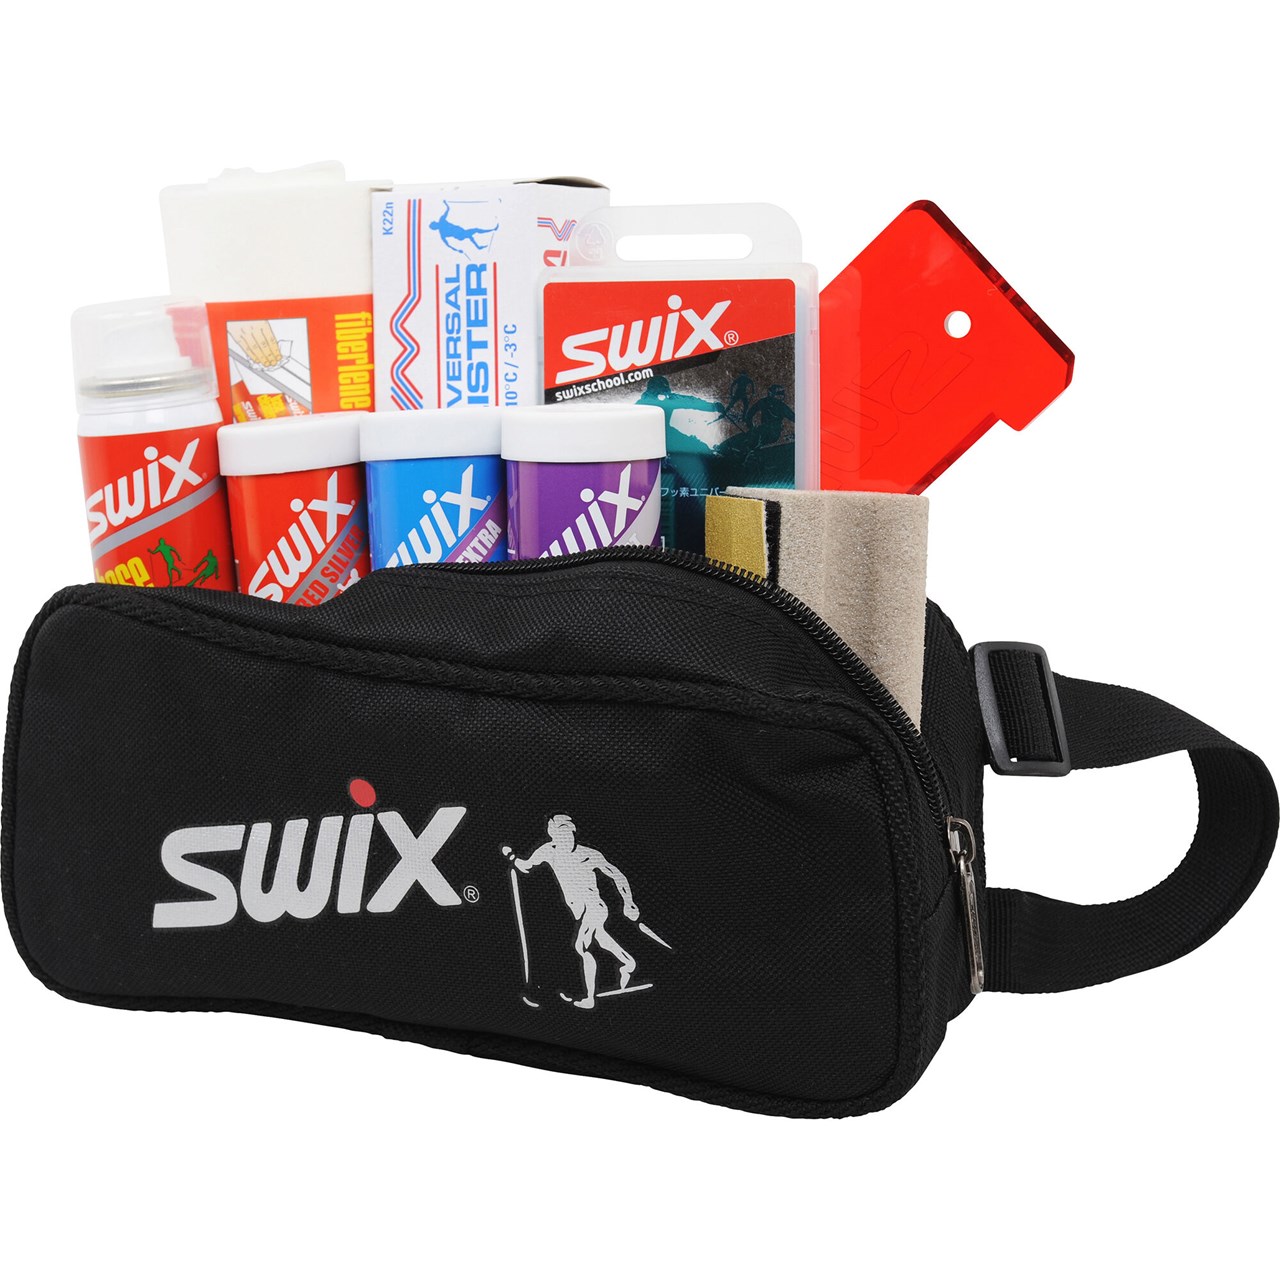 Swix wax-csomag Forrás: swixsport.com